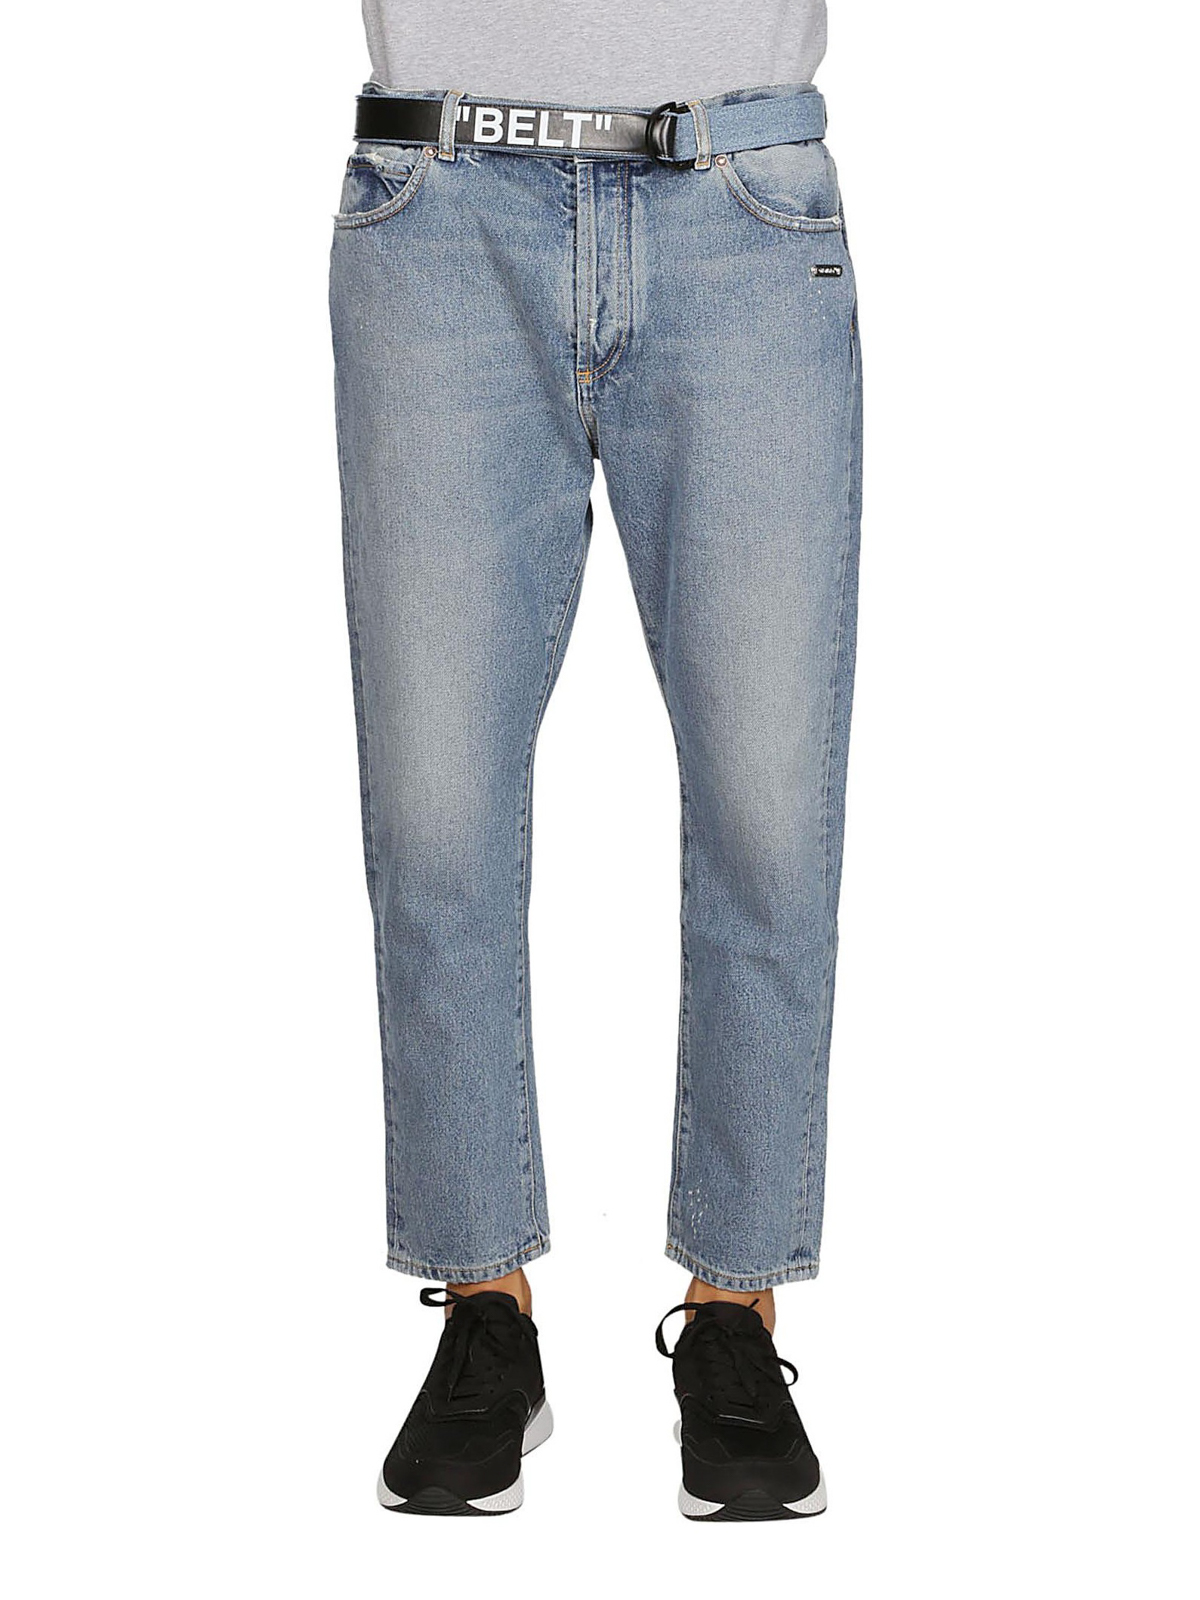 Straight leg jeans Off-White - belt jeans OMYA005F181660047300